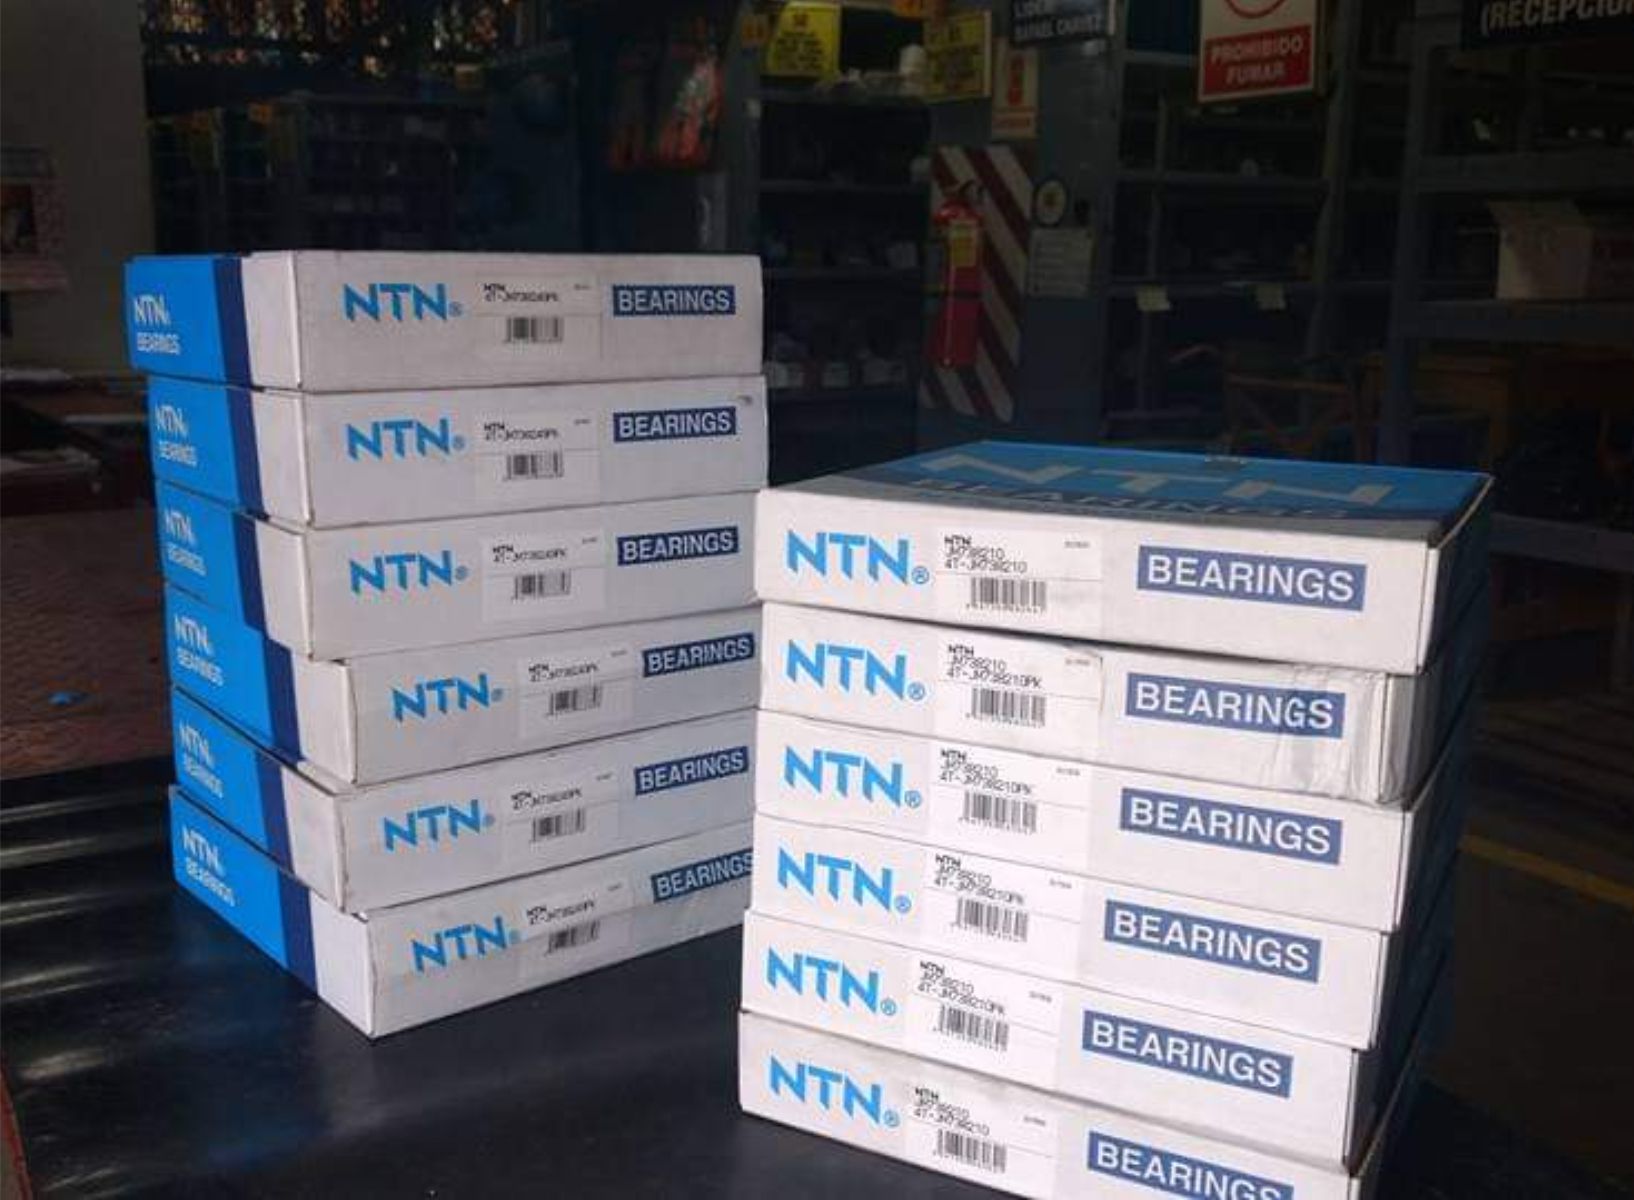 Despacho de rodamiento marca NTN para cliente de Casa Grande - Trujillo (Perú)